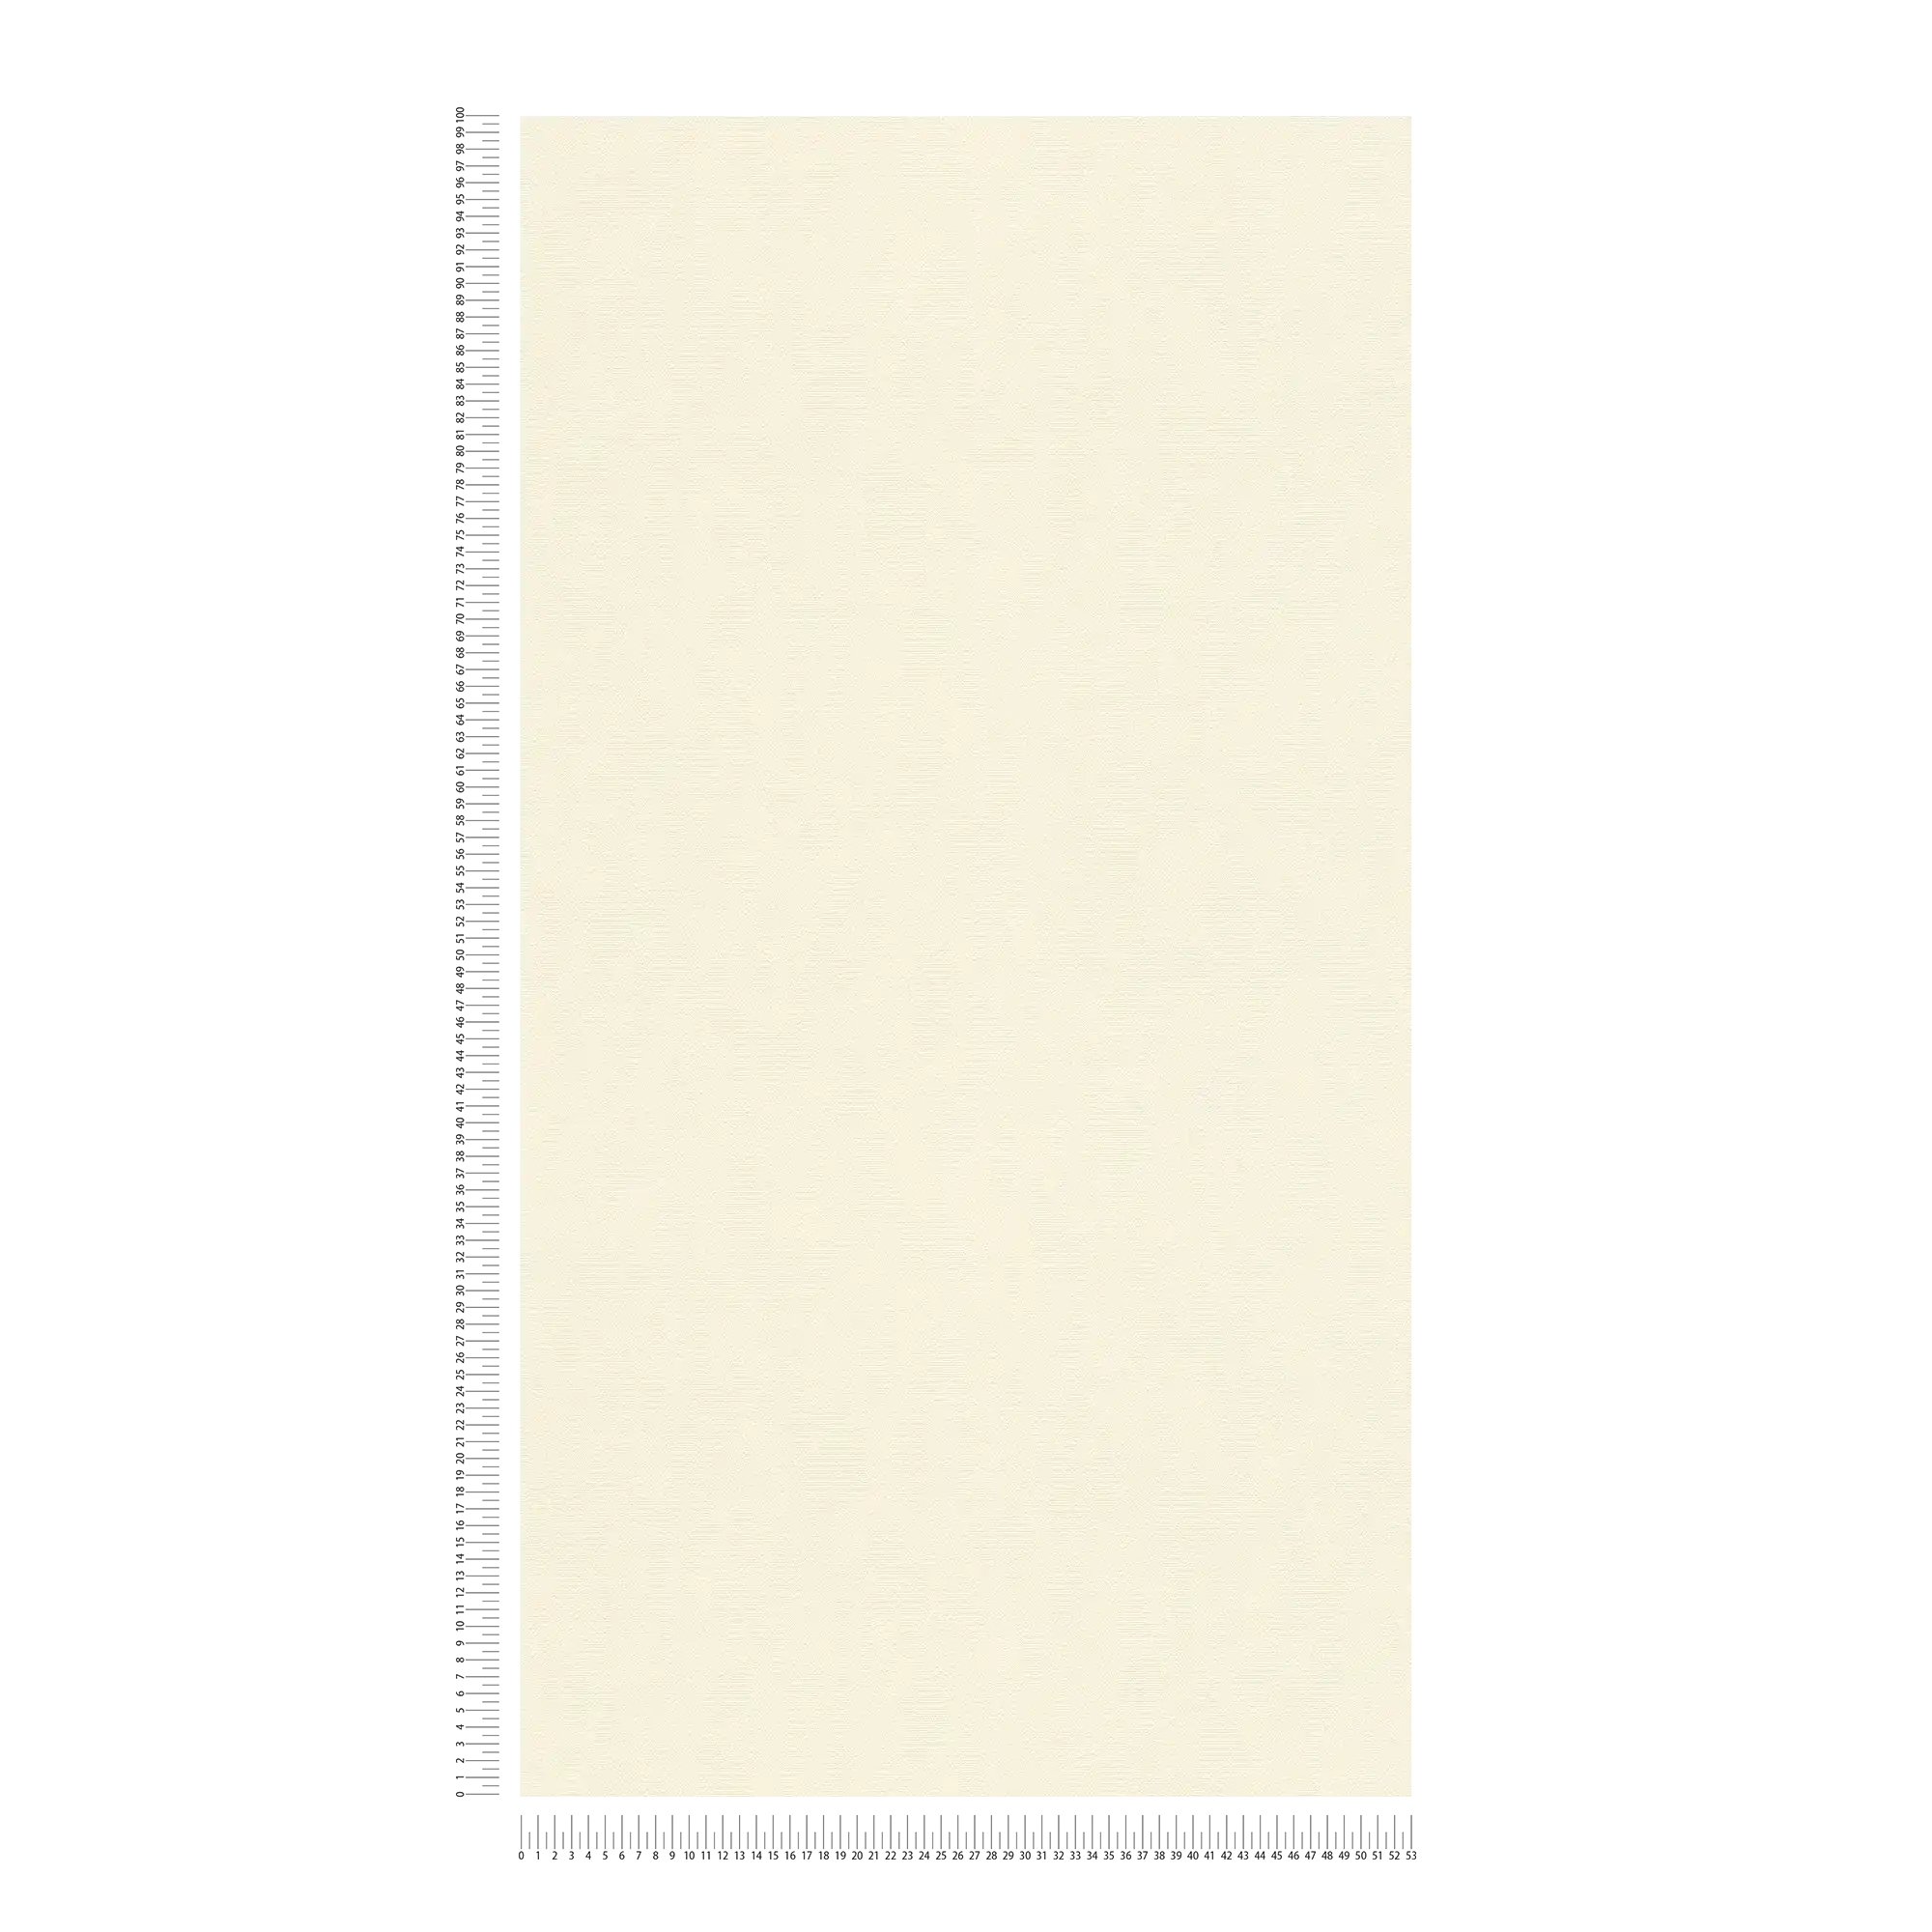             Carta da parati in tessuto non tessuto bianco crema a tinta unita con superficie strutturata
        